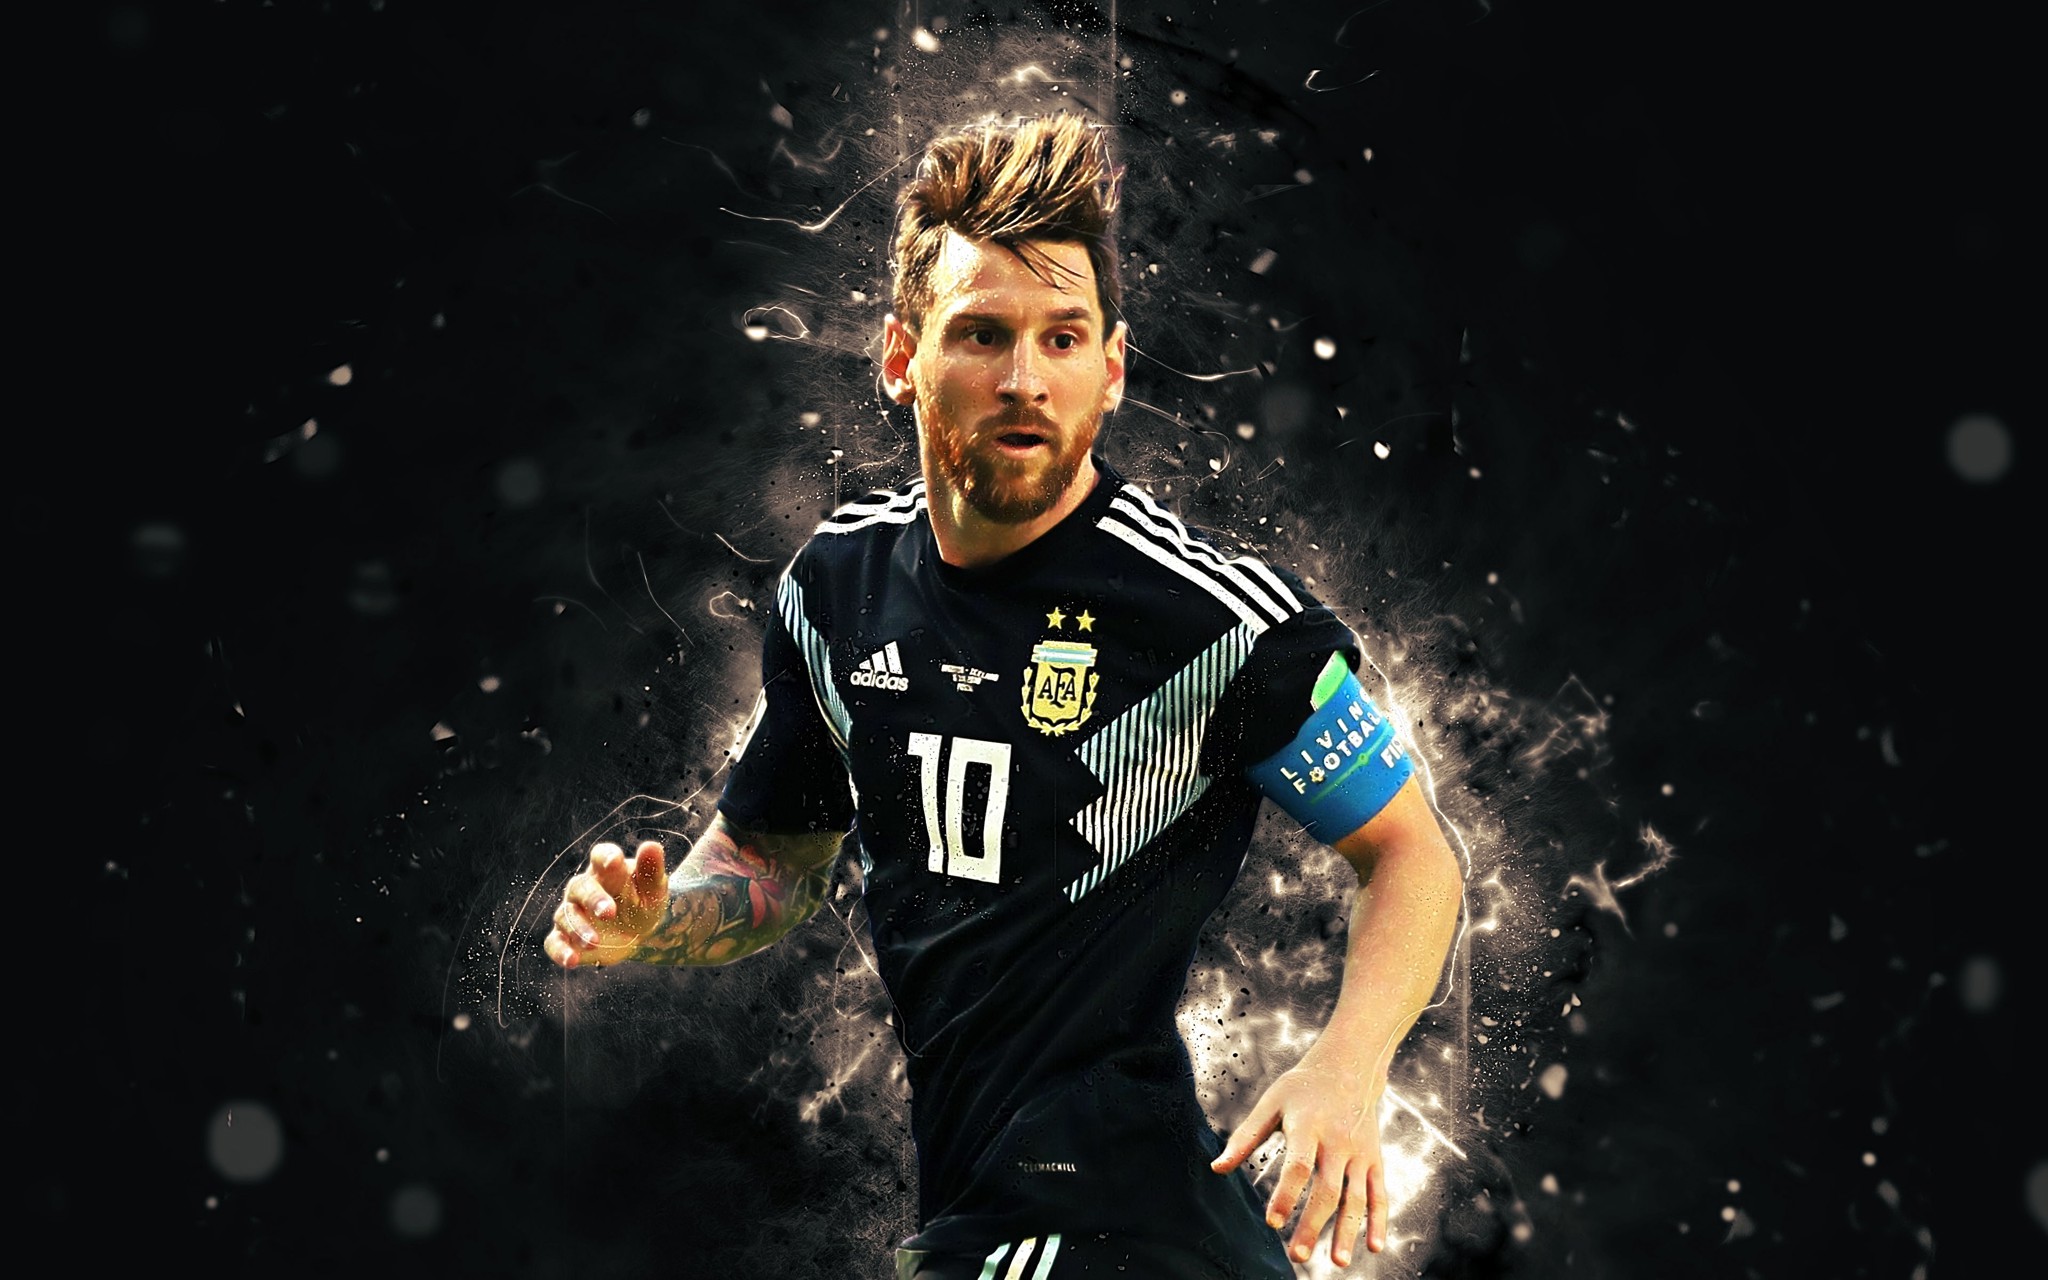 Với độ phân giải 4K và 3D, hình nền của Lionel Messi được chạm khắc và làm nổi bật từng chi tiết nhỏ nhất. Đây là một tác phẩm nghệ thuật kinh điển, đưa người xem đến gần hơn với thần tượng của họ và cảm nhận sự tuyệt vời của bộ môn bóng đá. Hãy cùng thưởng thức hình nền Messi chuẩn 4K 3D ngay bây giờ!